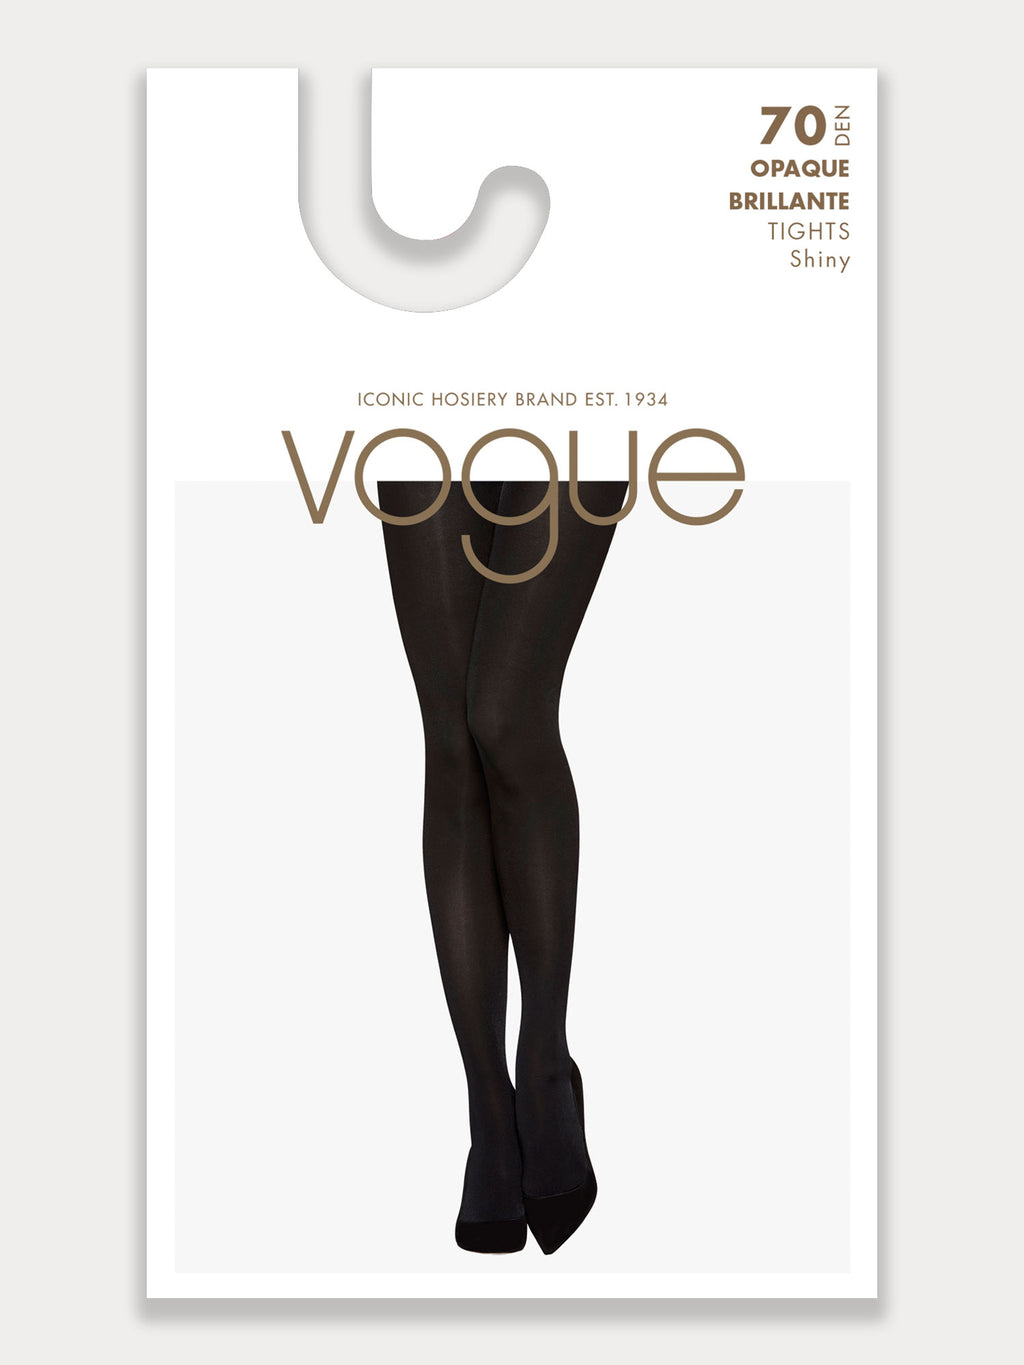 Vogue Opaque Brillante 70 Denier Tights